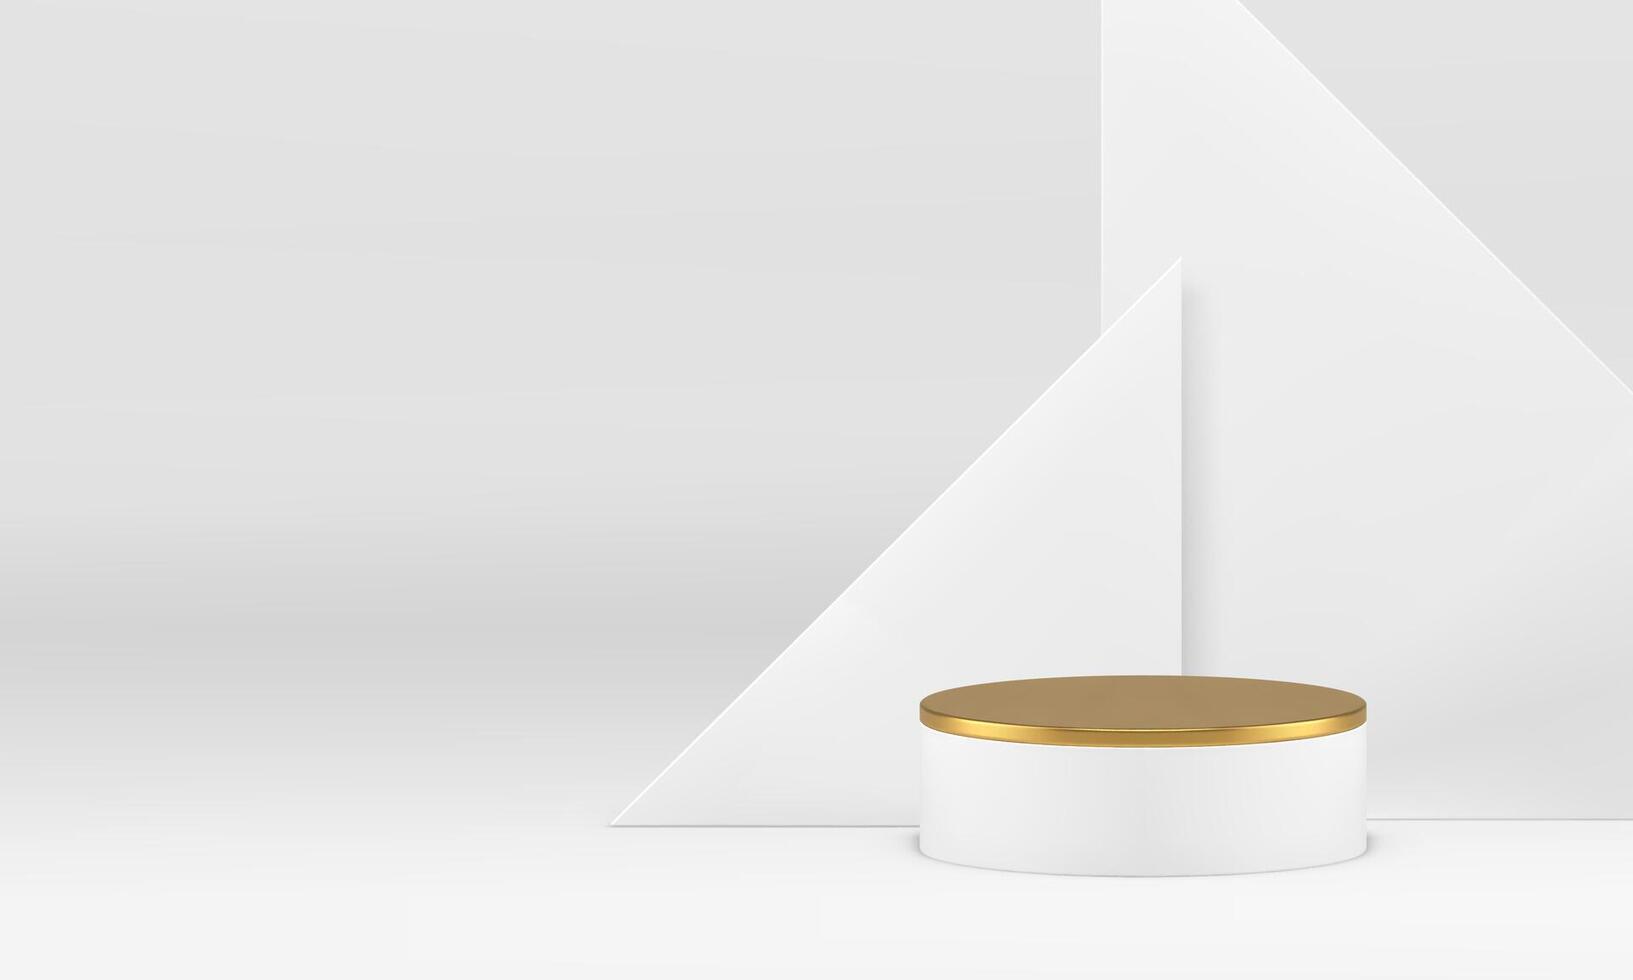 blanc luxe 3d podium piédestal d'or cylindre supporter vitrine réaliste illustration vecteur